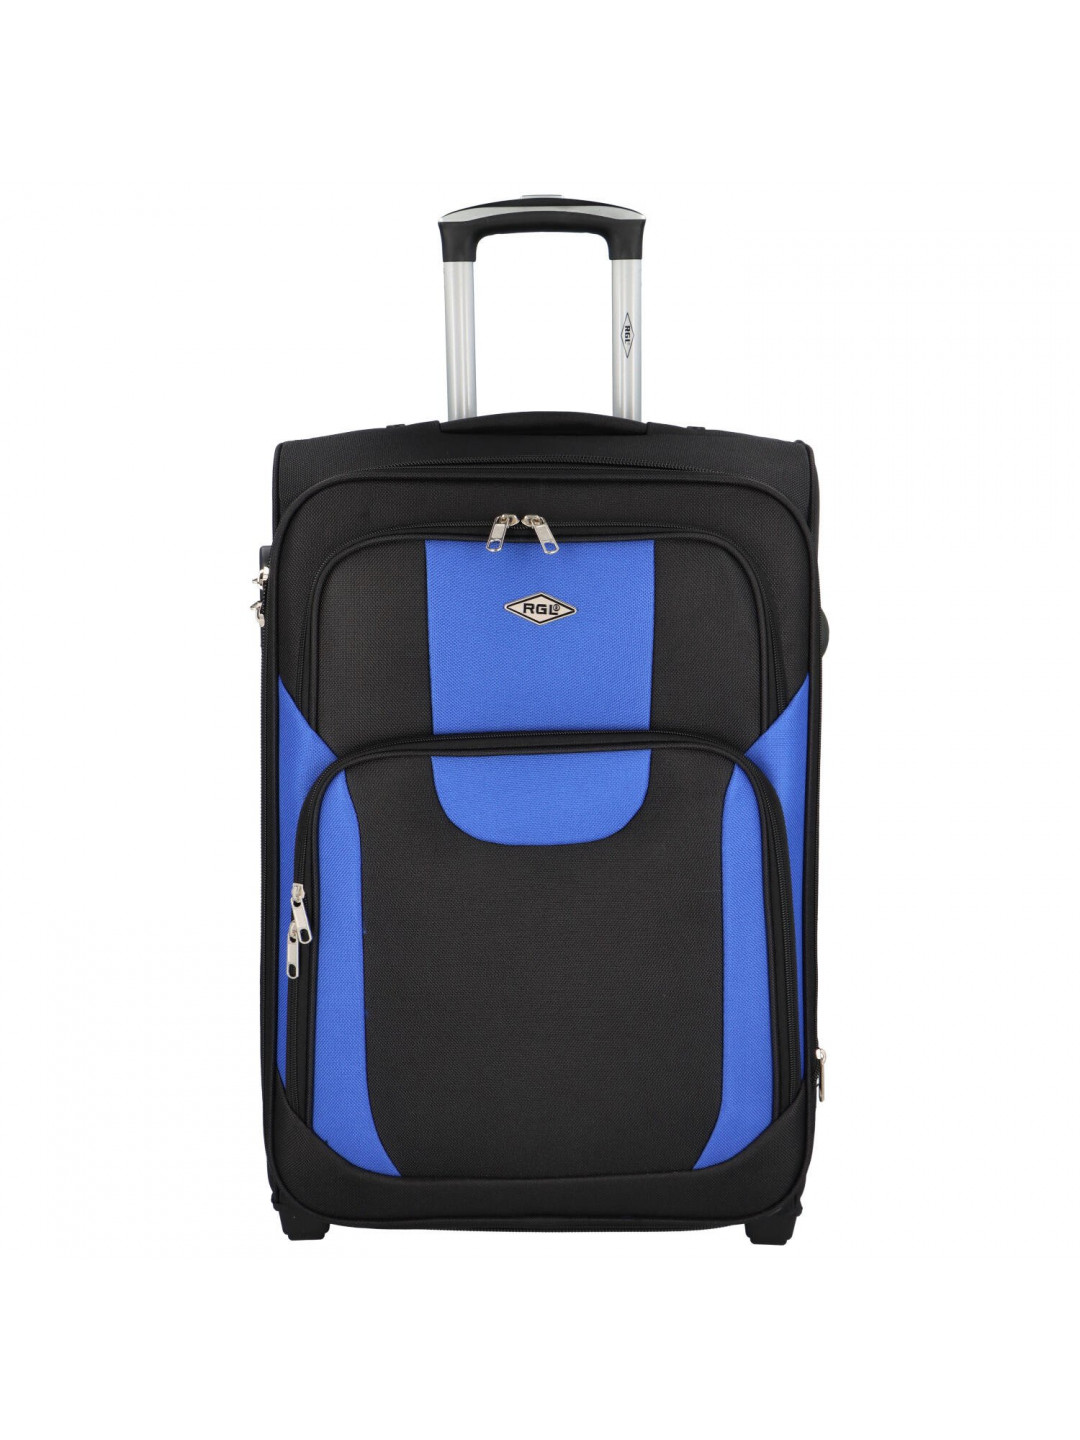 Cestovní kufr Asie velikost M černá-modrá